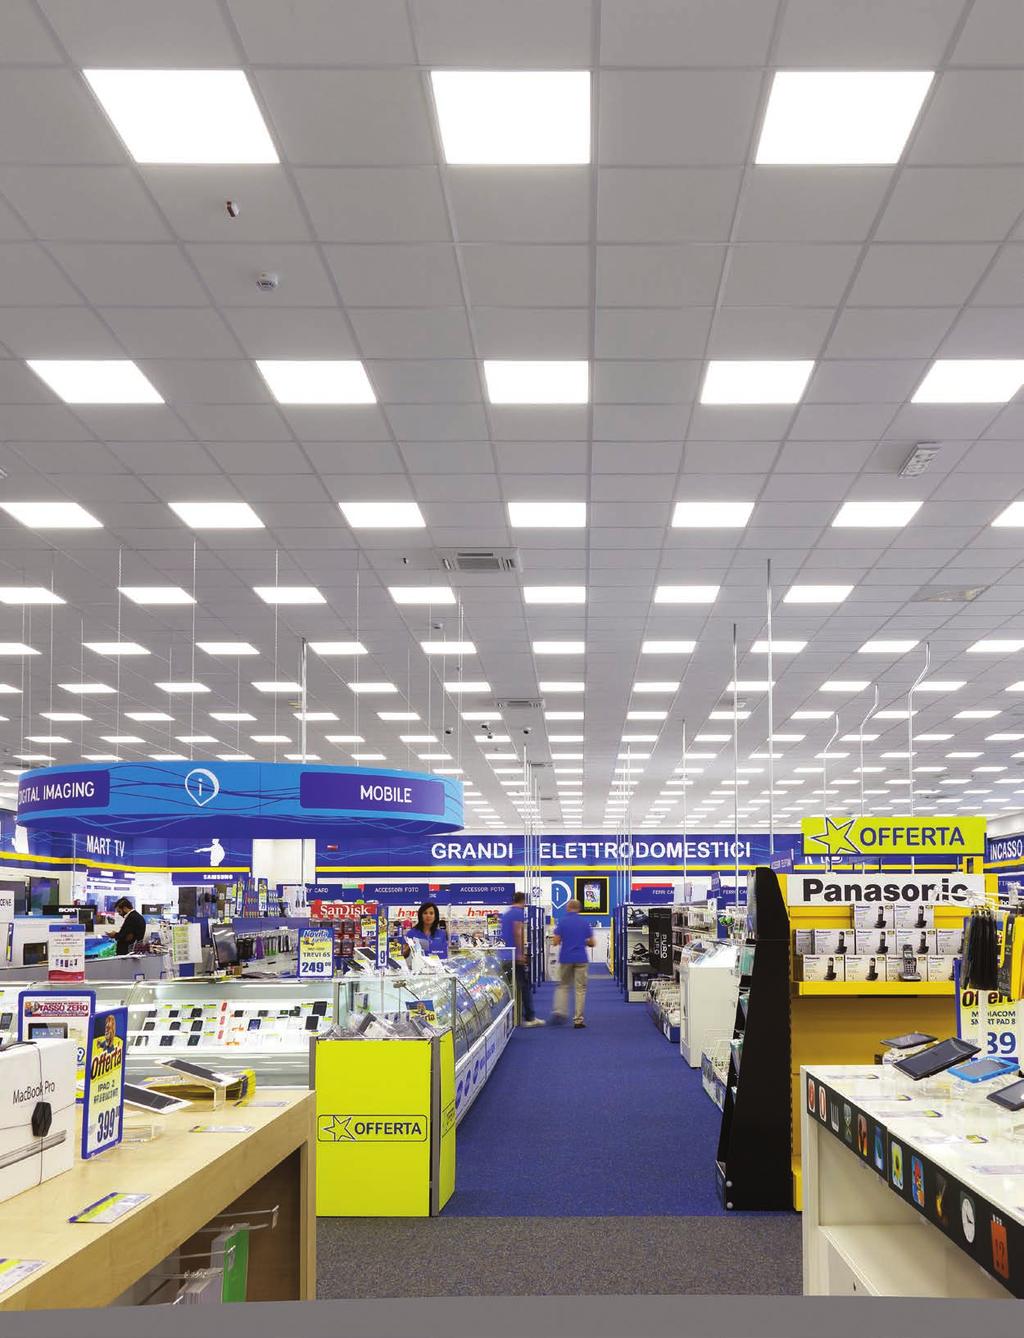 Professional Panel Light Serie di apparecchi a LED per aree comuni, corridoi, scale, laboratori, strutture sanitarie, sale riunioni, negozi, adatte per controsoffitti a vista.